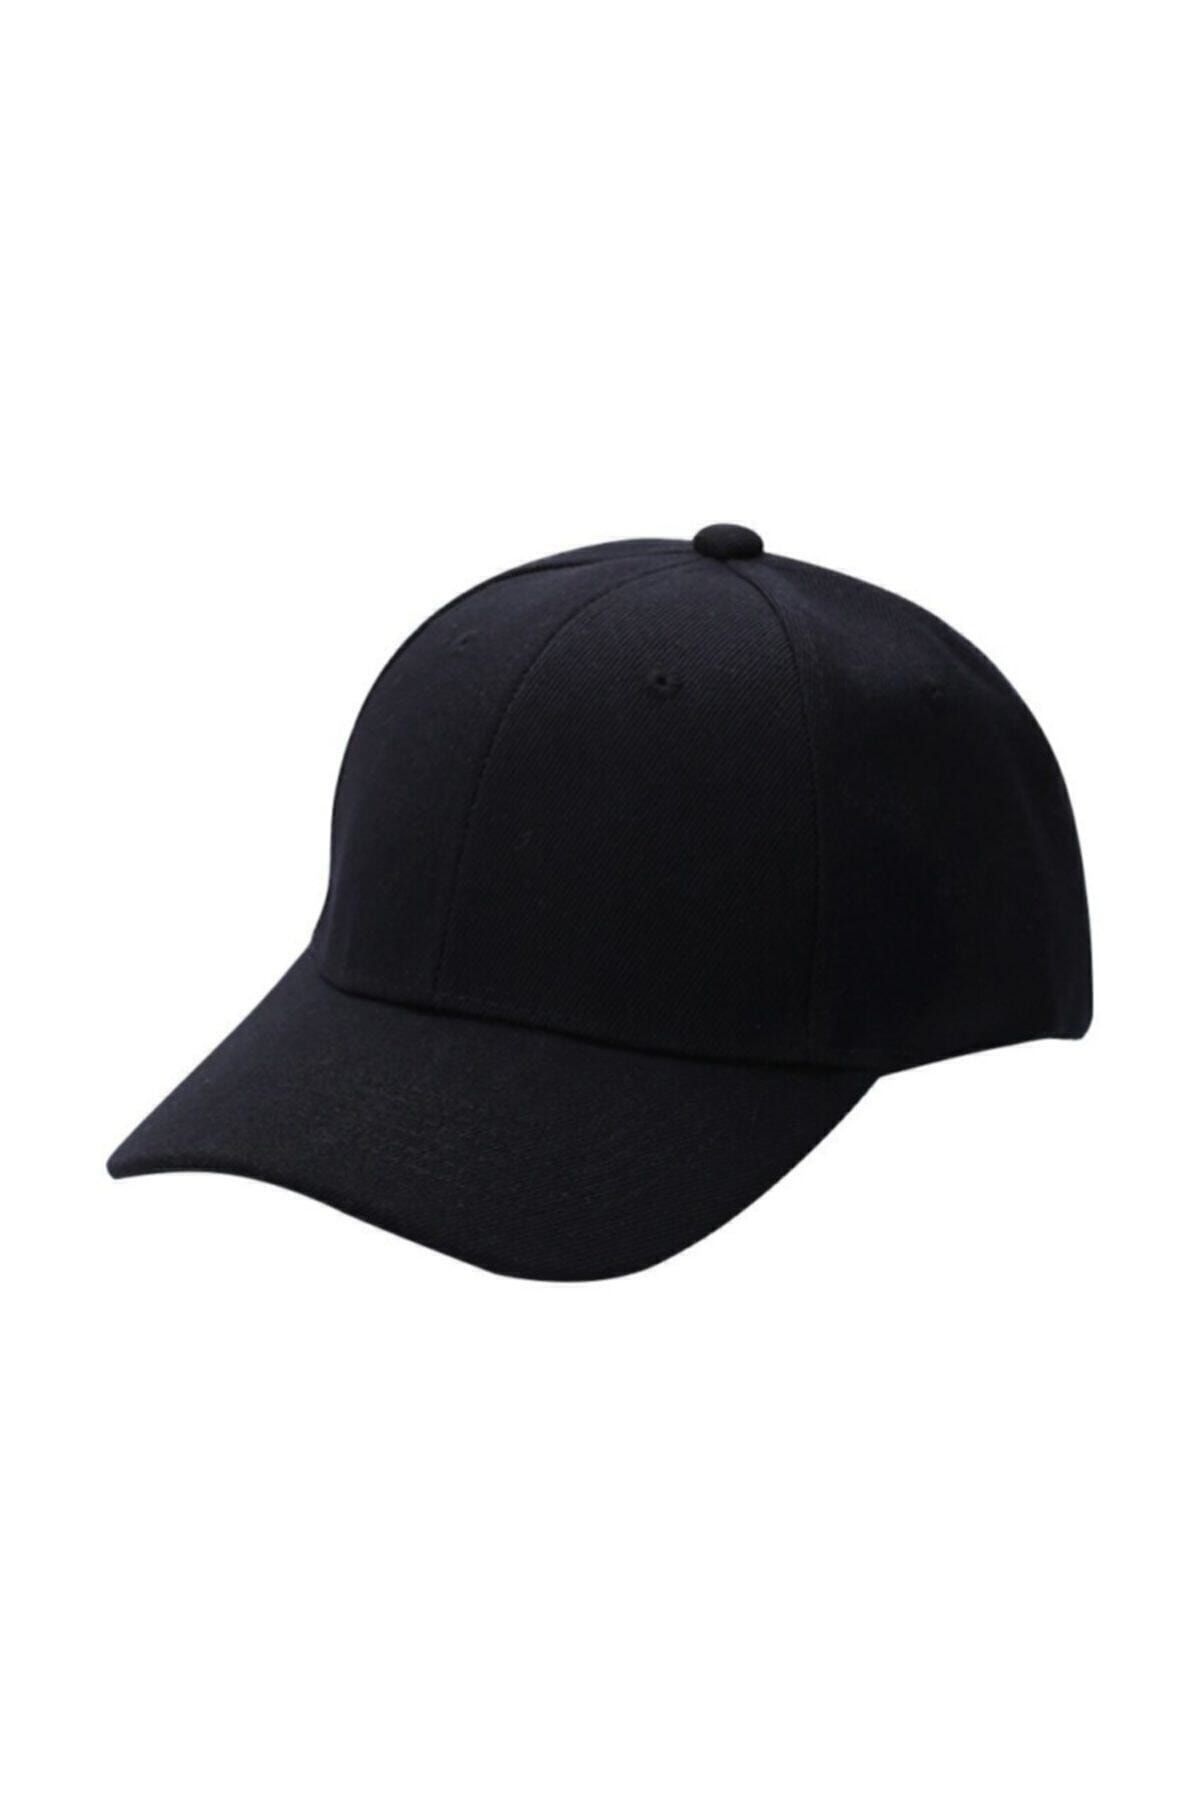 salarticaret Unisex Siyah Spor Şapka Unisex Arkası Cırtlı Ayarlanabilir